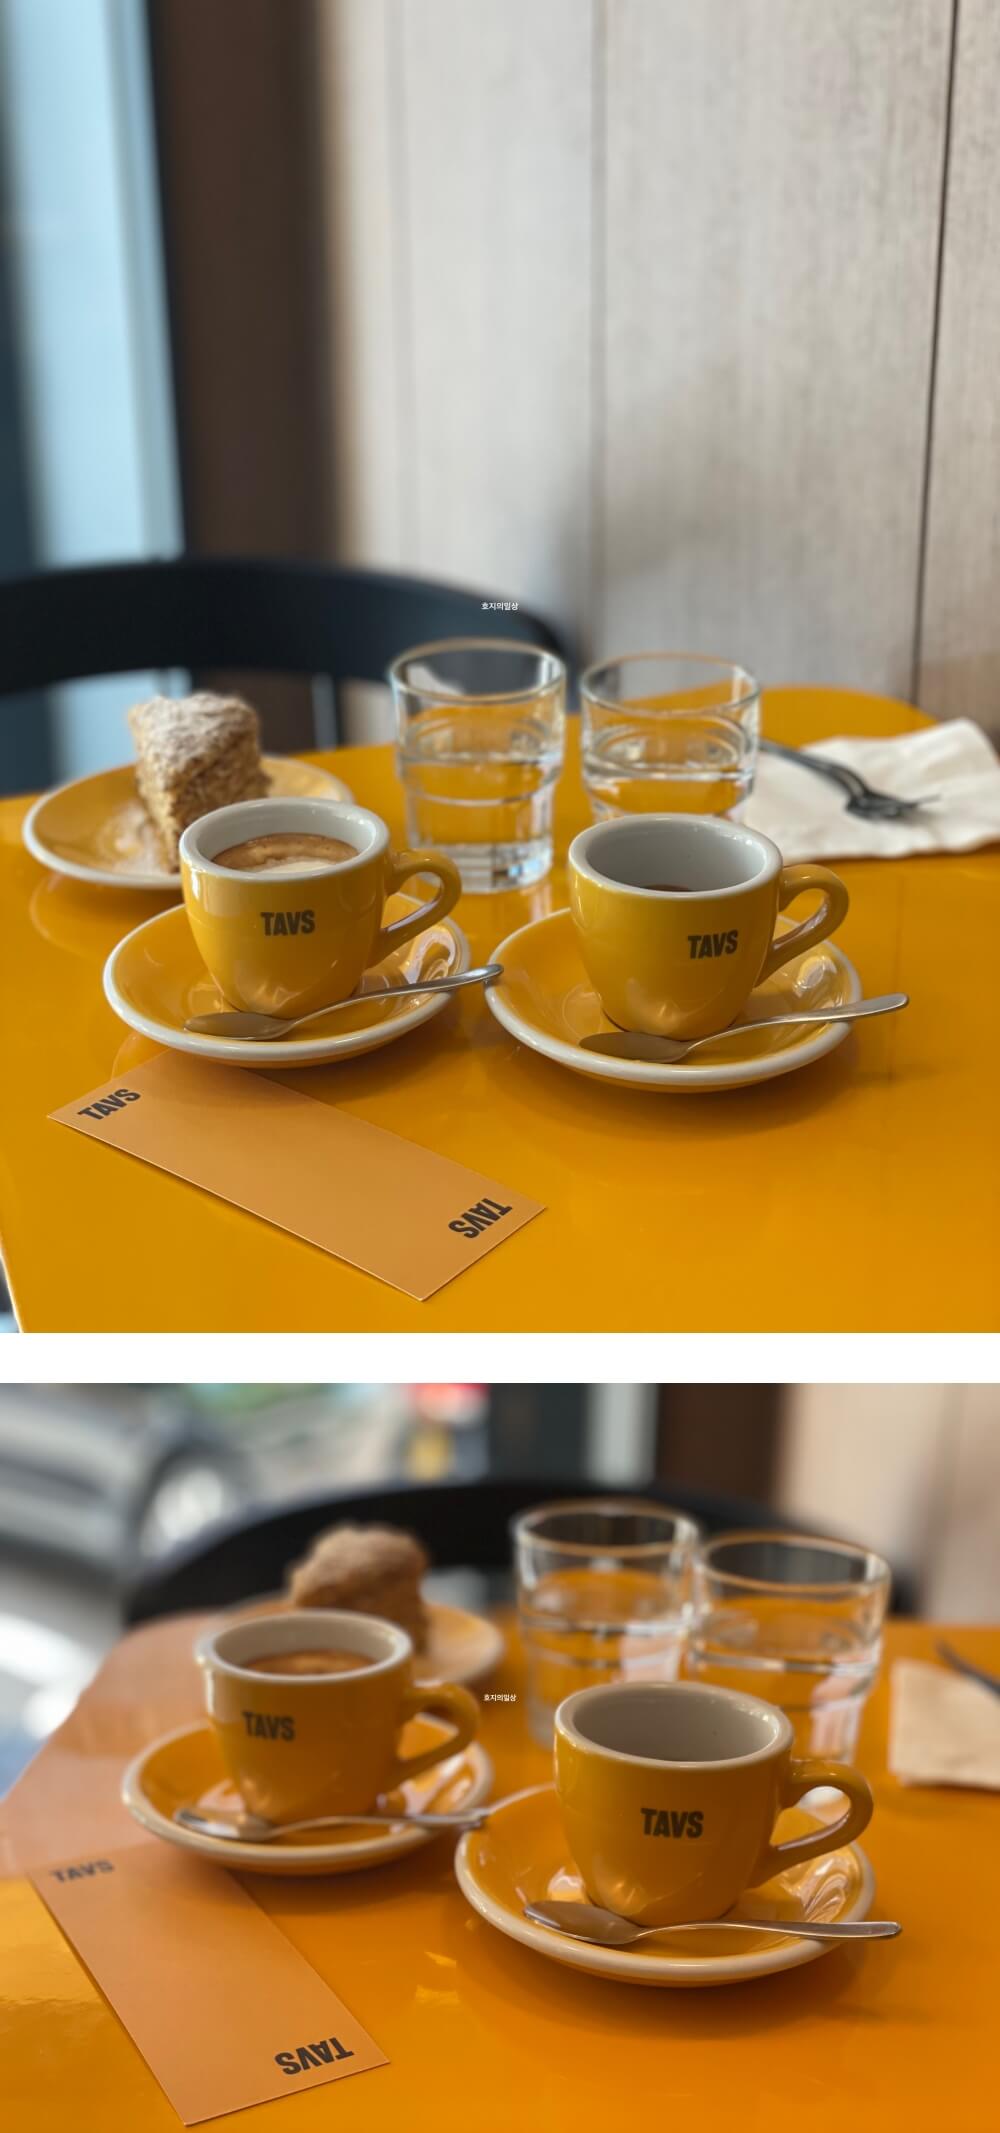 카페 타브스 에스프레소 바 - 테이블 위 음료 및 케익